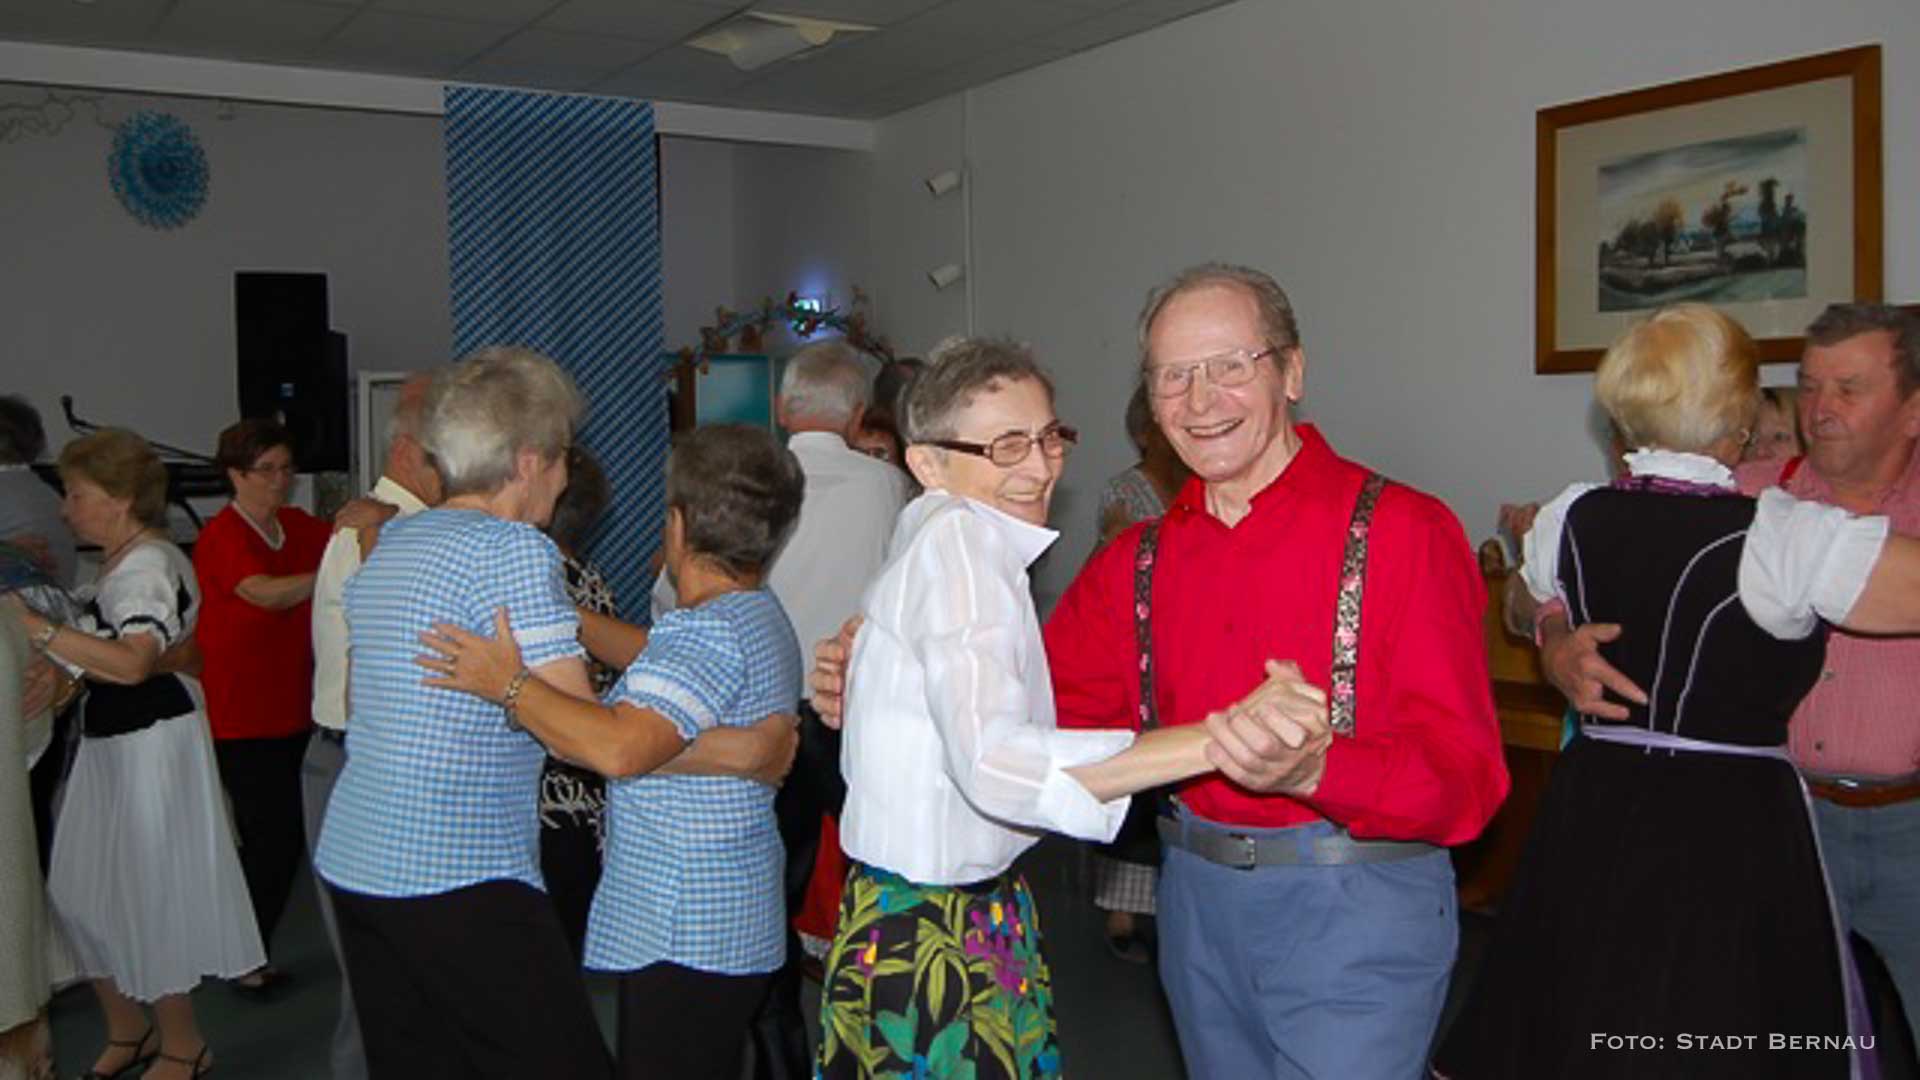 Liebe Senioren in Bernau, am Mittwoch darf getanzt werden